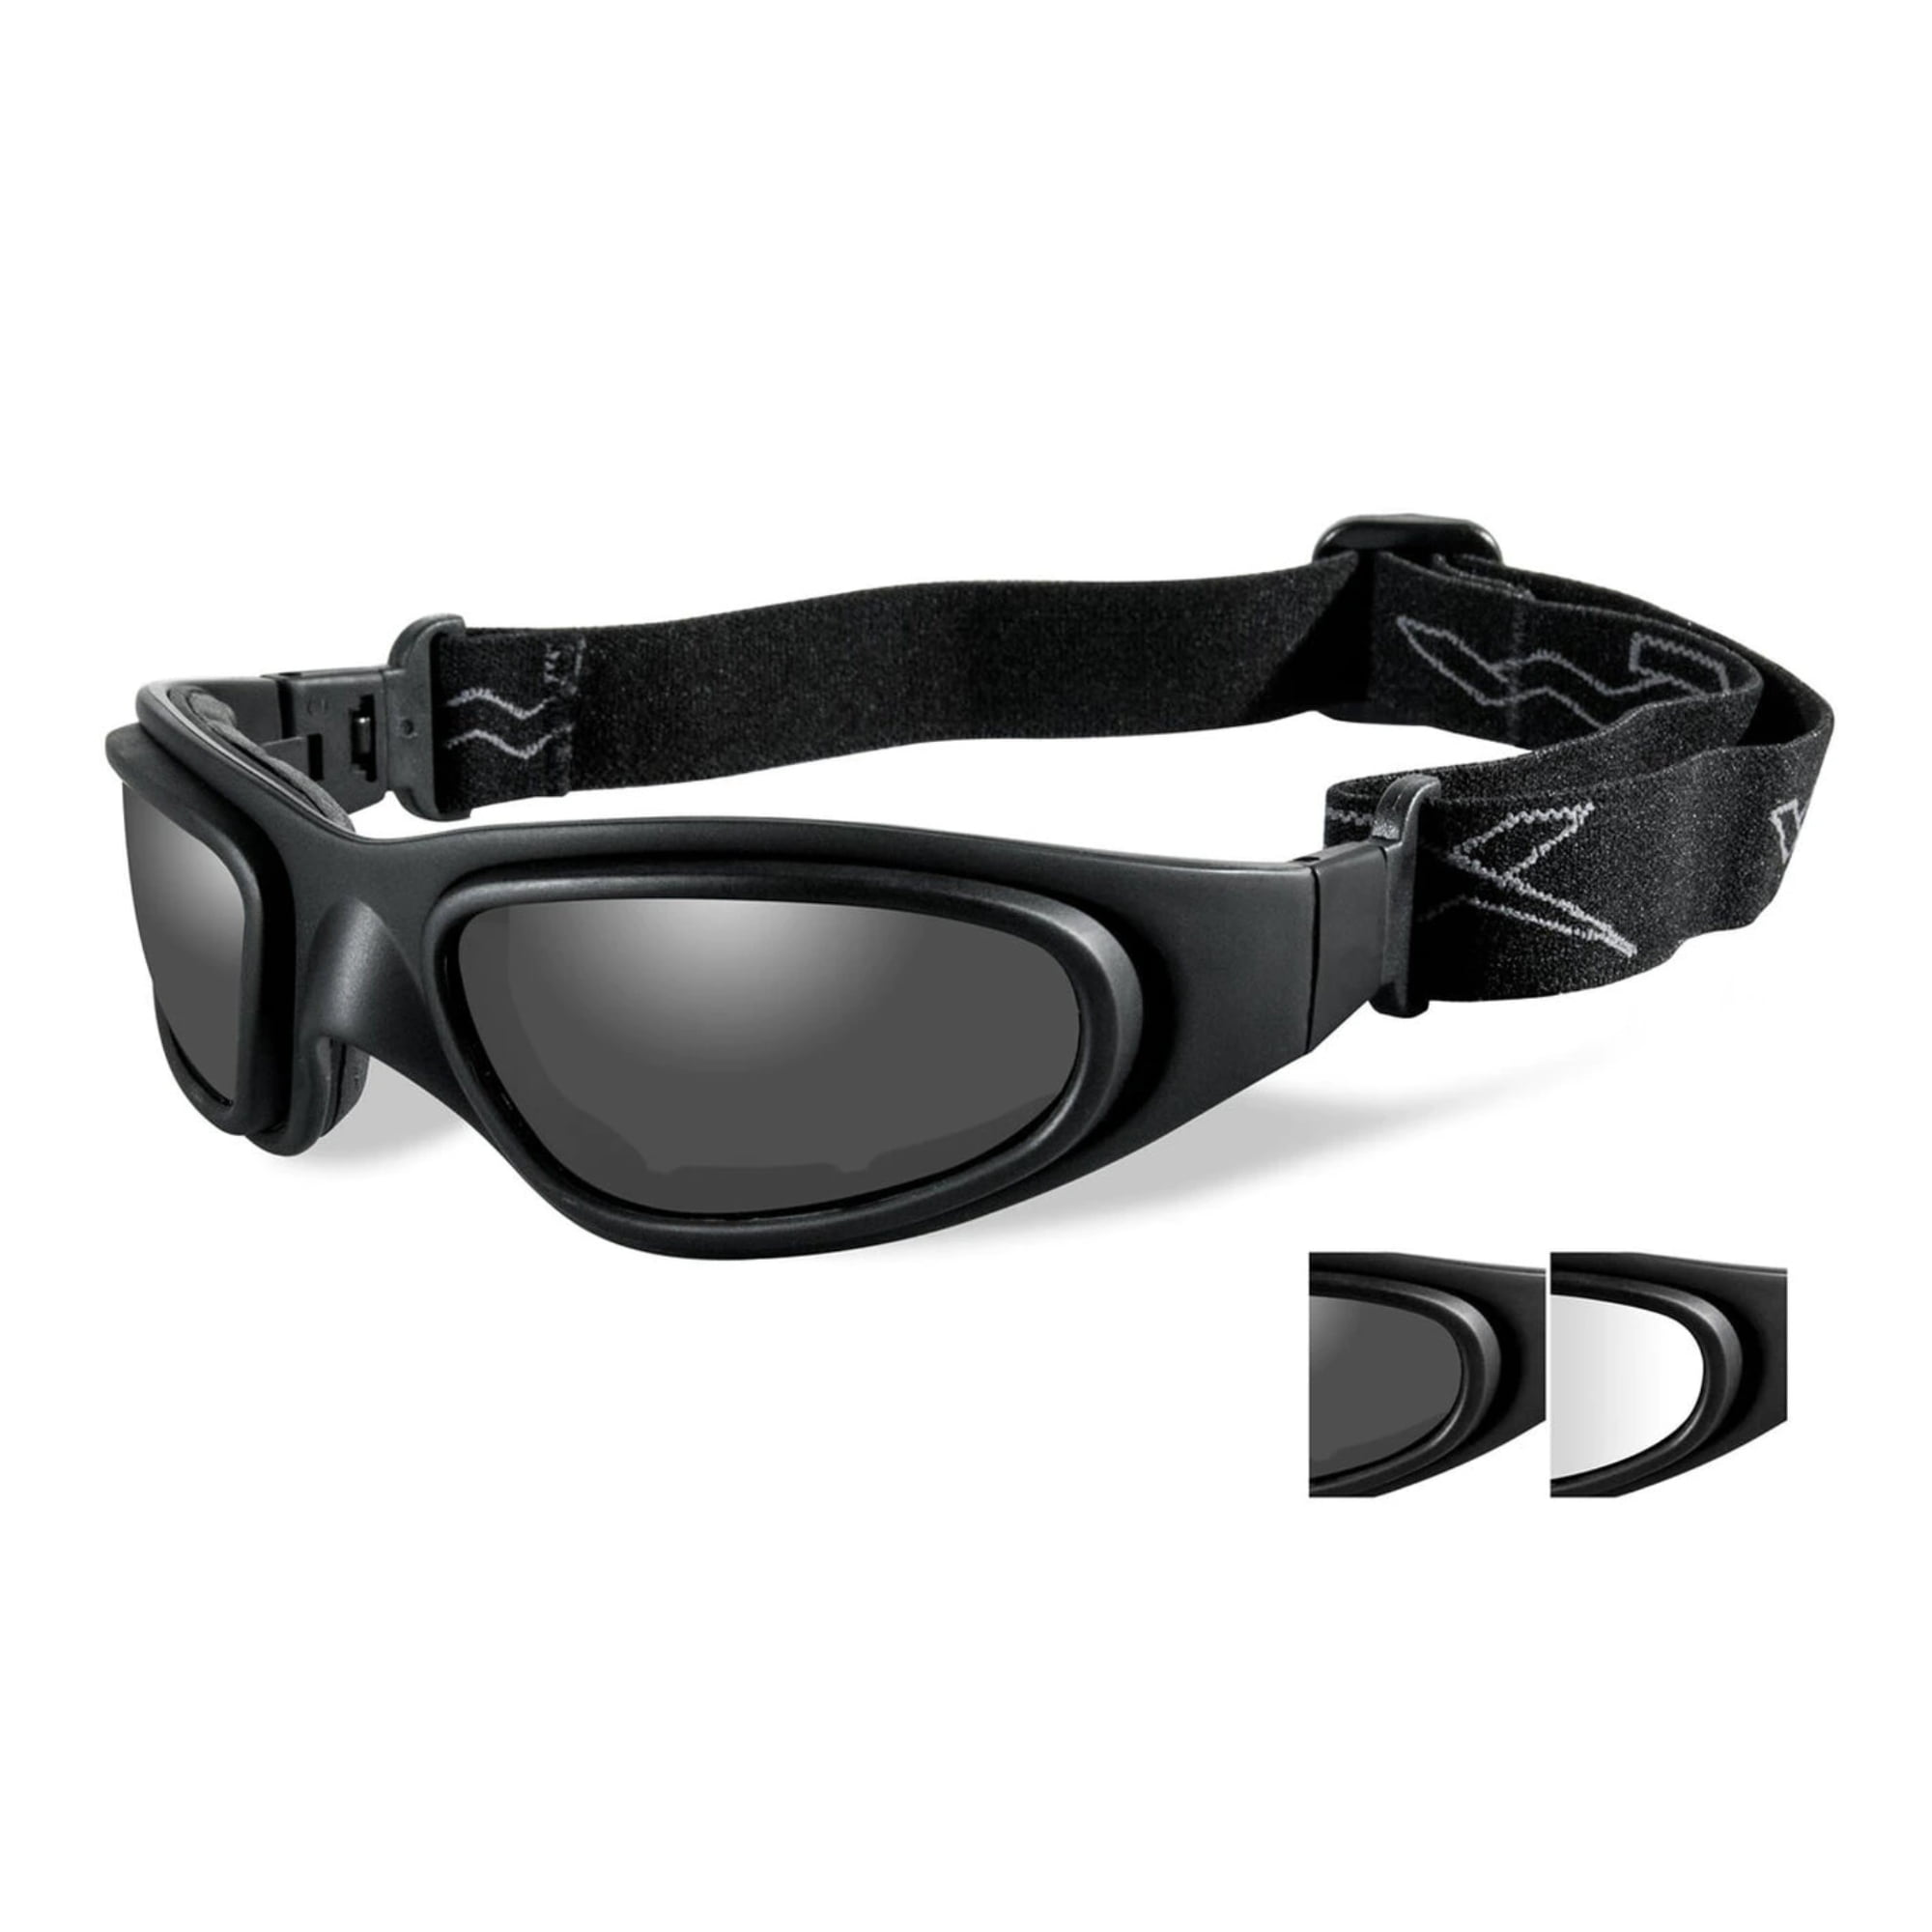 Купить очки 10. Маска-очки Wiley-x SG-1. Тактические очки Wiley x. Очки WX Wiley-x. Тактические очки Wiley x SG-1 со сменными линзами.